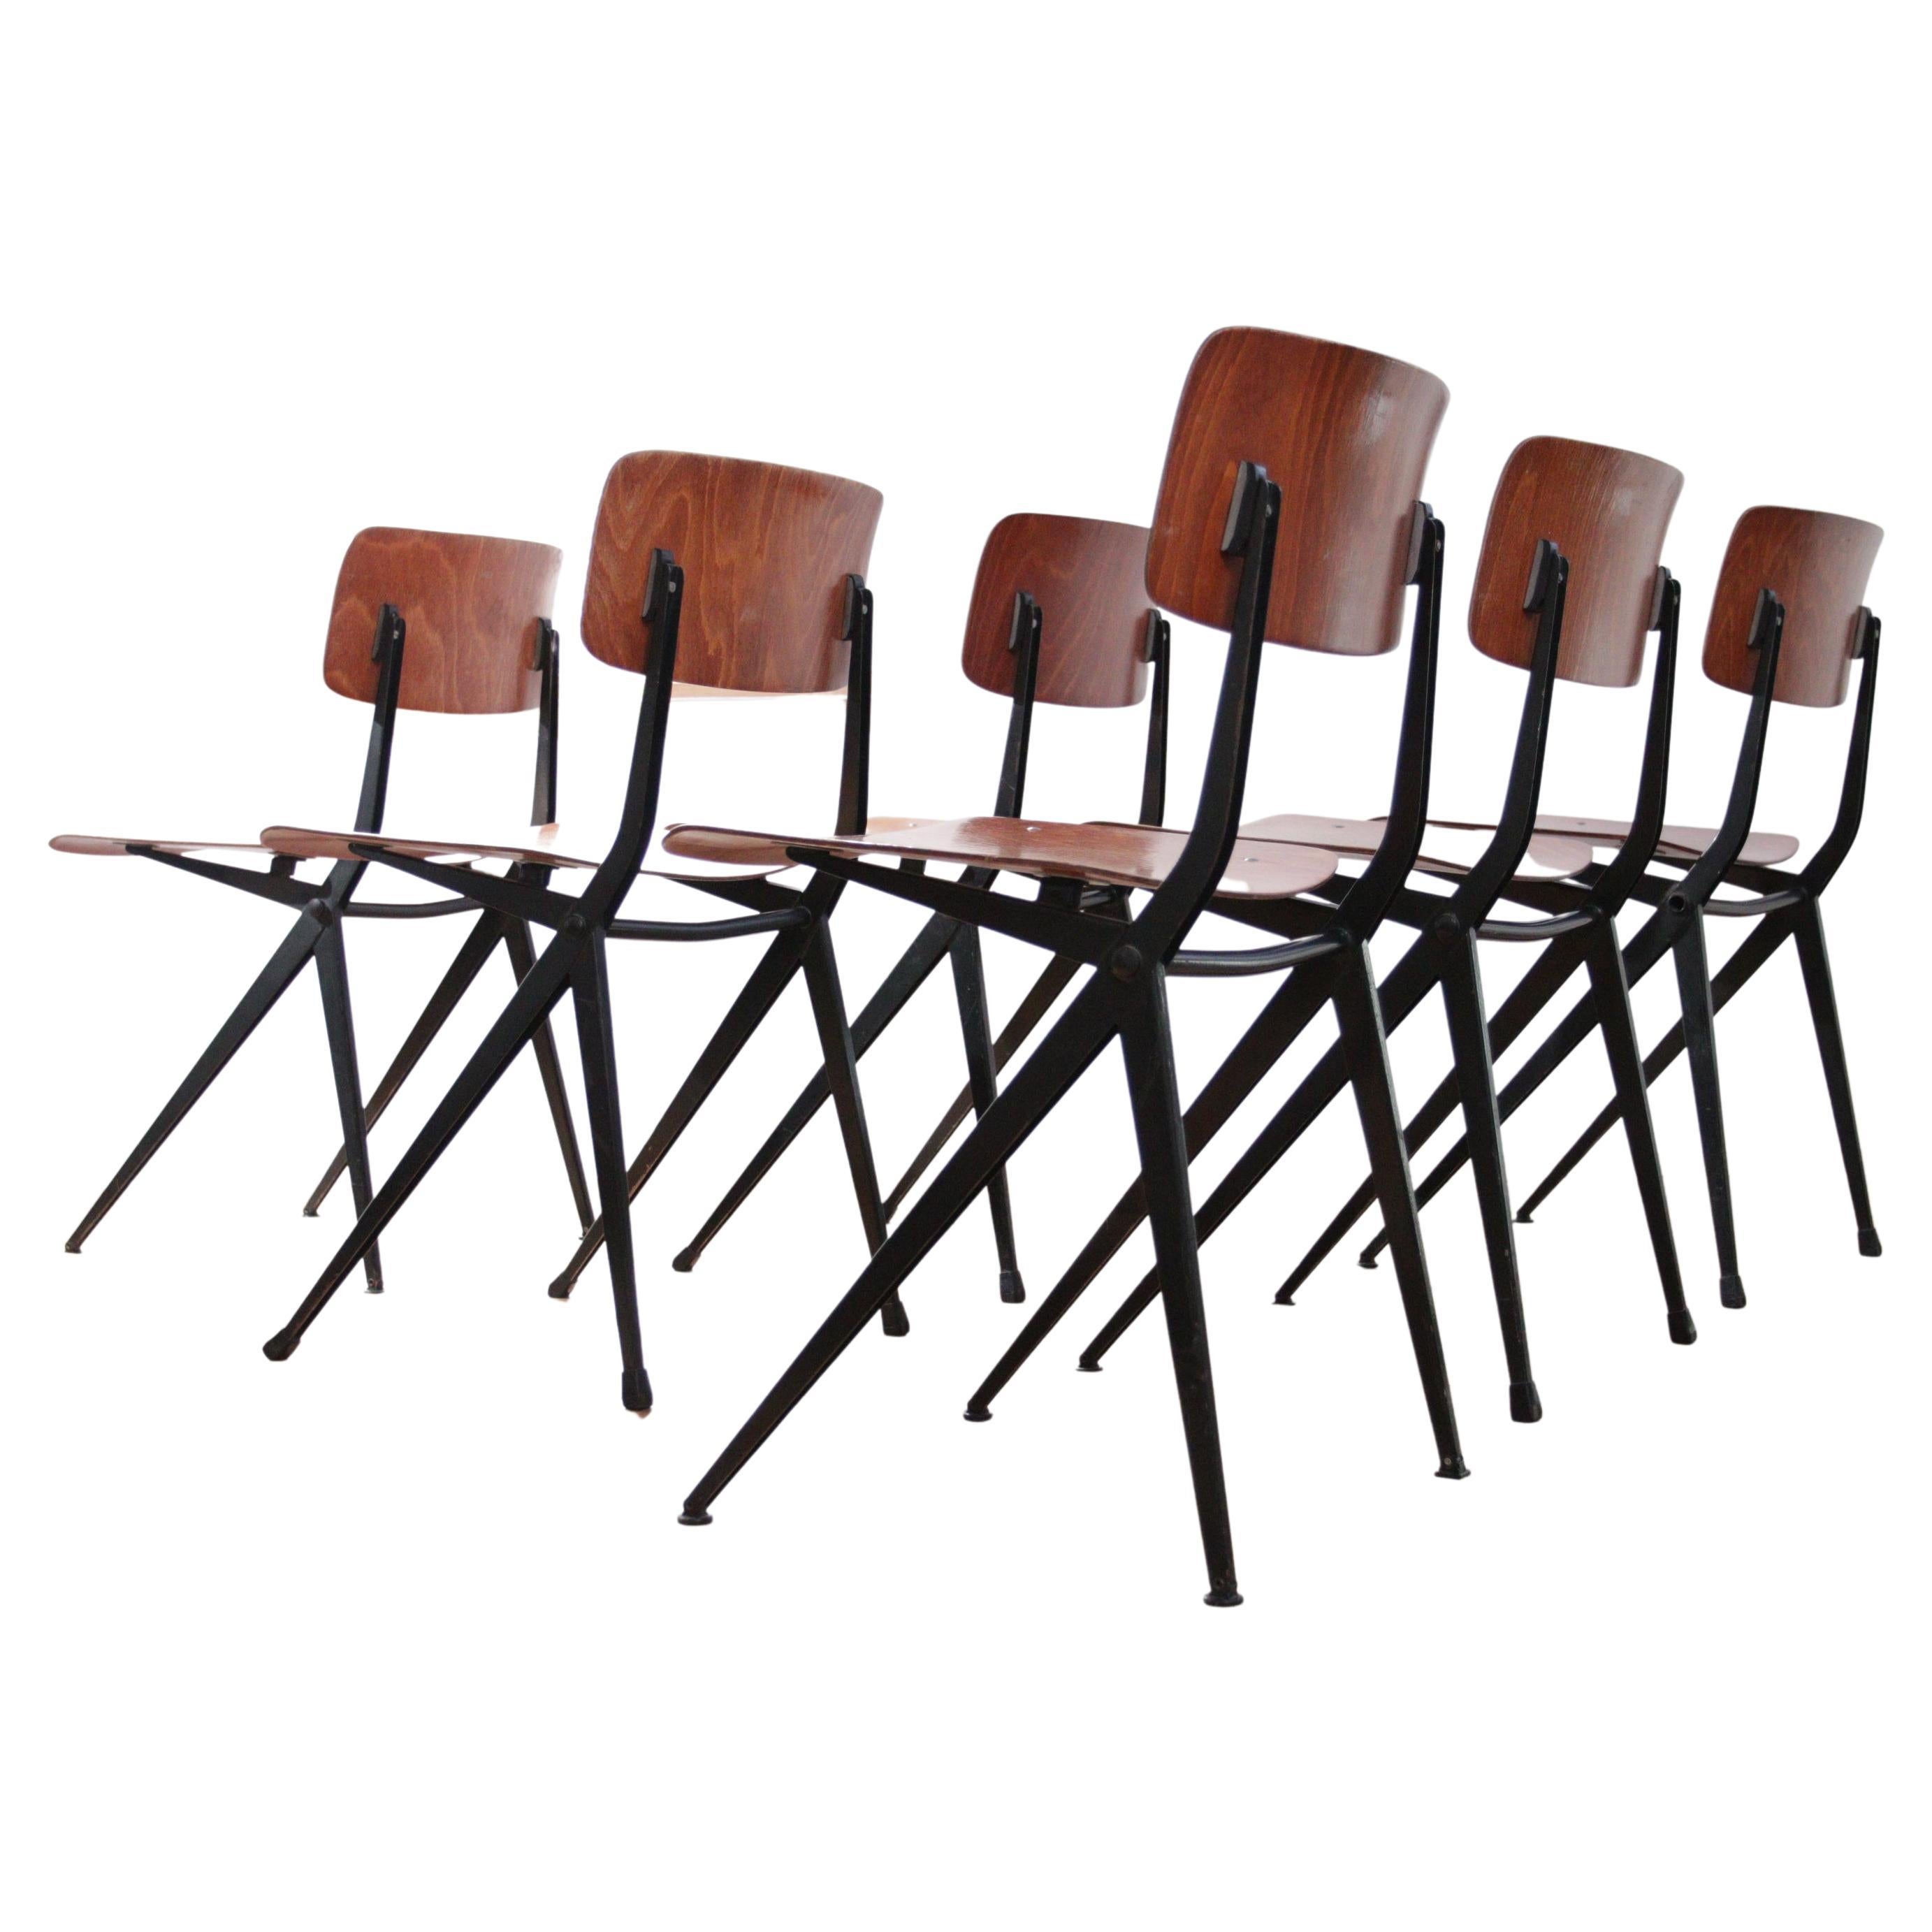 Marko S201 Ynske Kooistra Dining Room Chairs For Sale